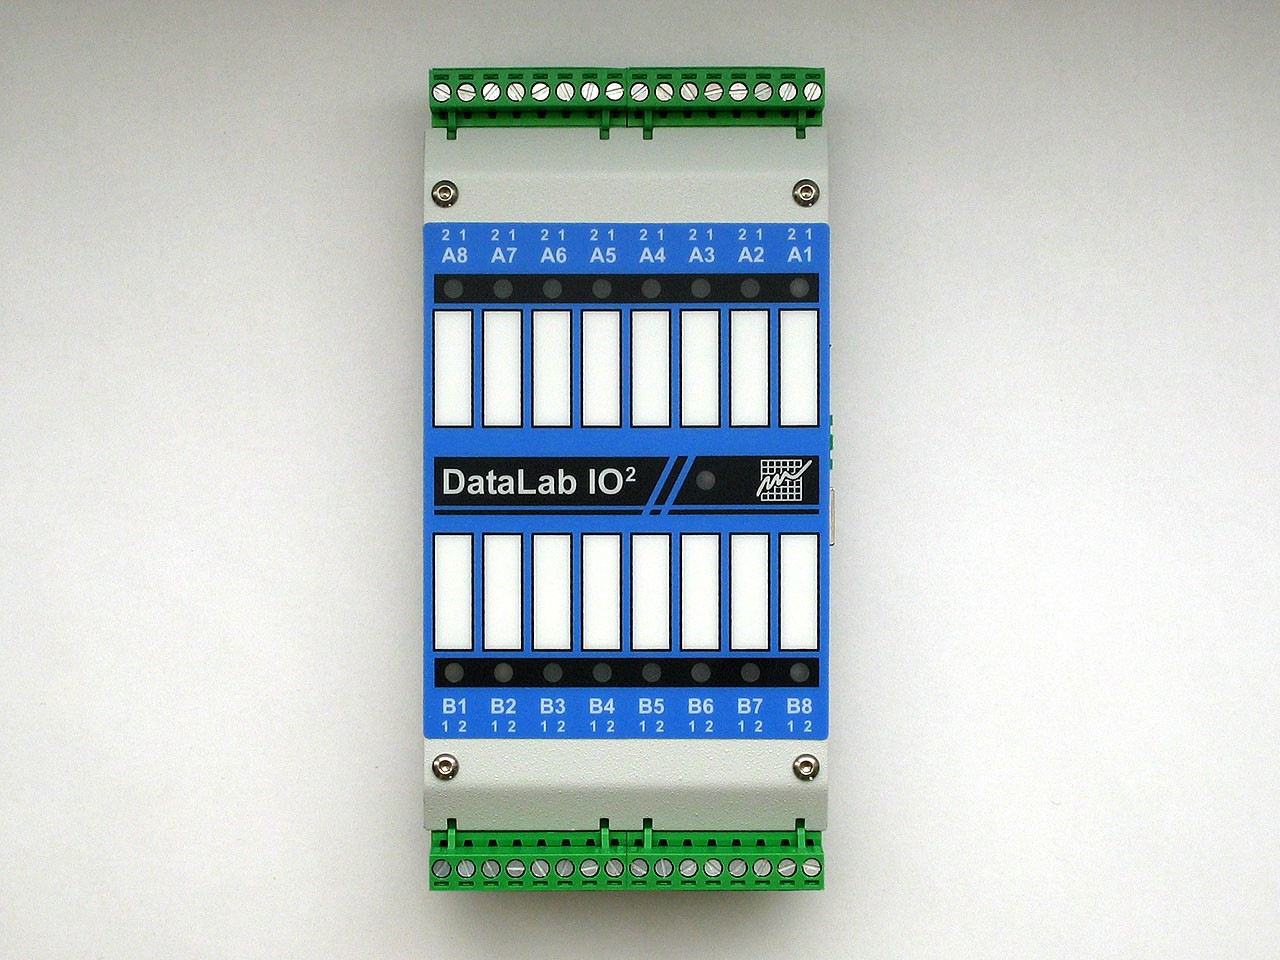 CPU modul DataLab IO2/USB Vlastnosti 2 pozice pro vstupně/výstupní moduly Připojení přes USB Možnost externího napájení Volitelná montáž na DIN lištu CPU modul DataLab IO2/USB obsahuje USB rozhraní a